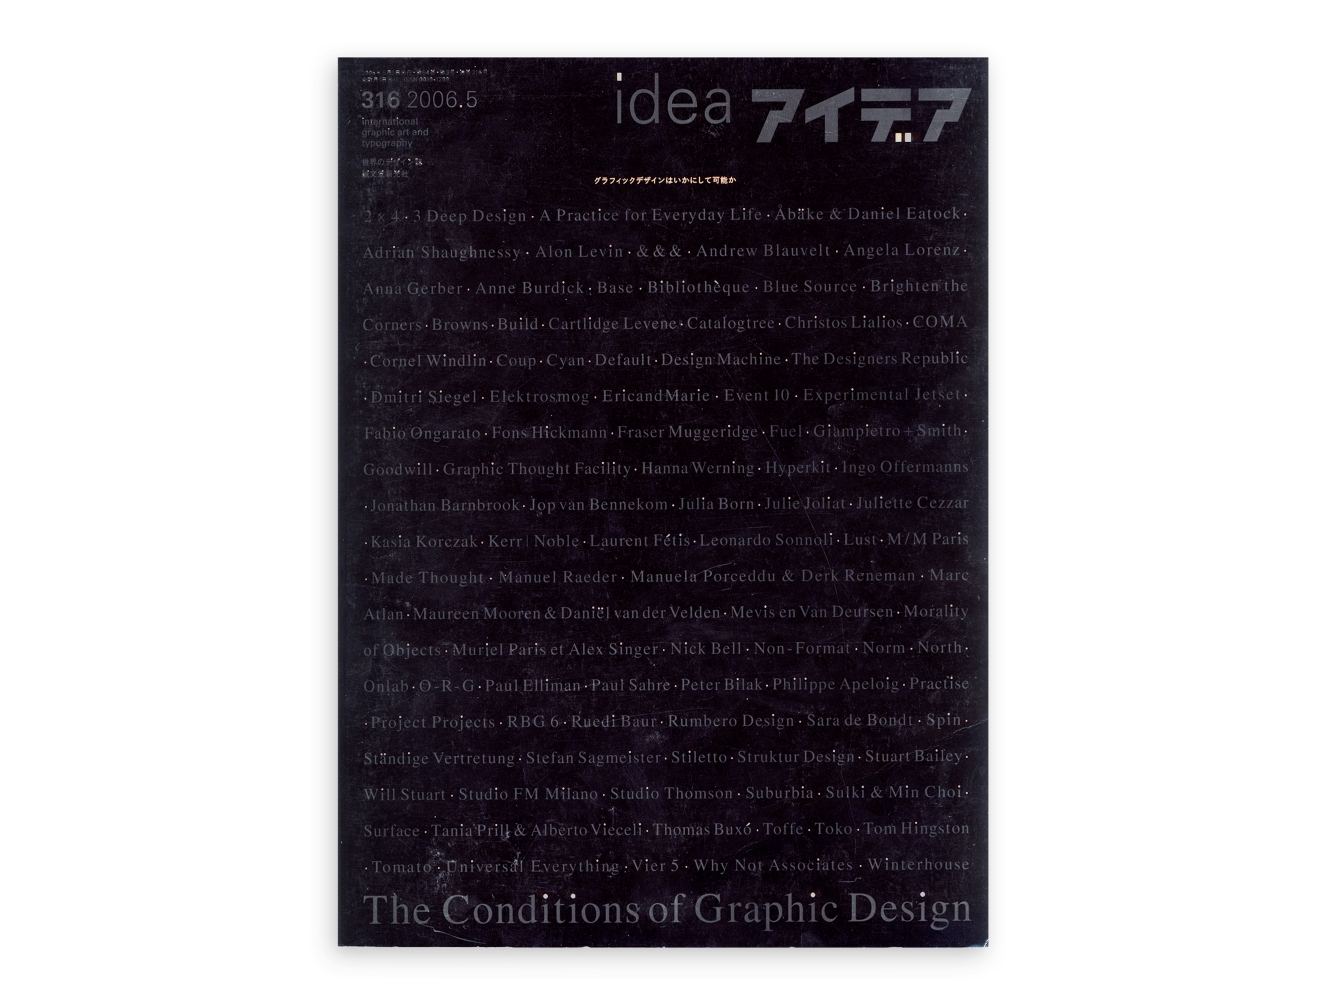 Idea Magazine 315: The Conditions Of Graphic Design